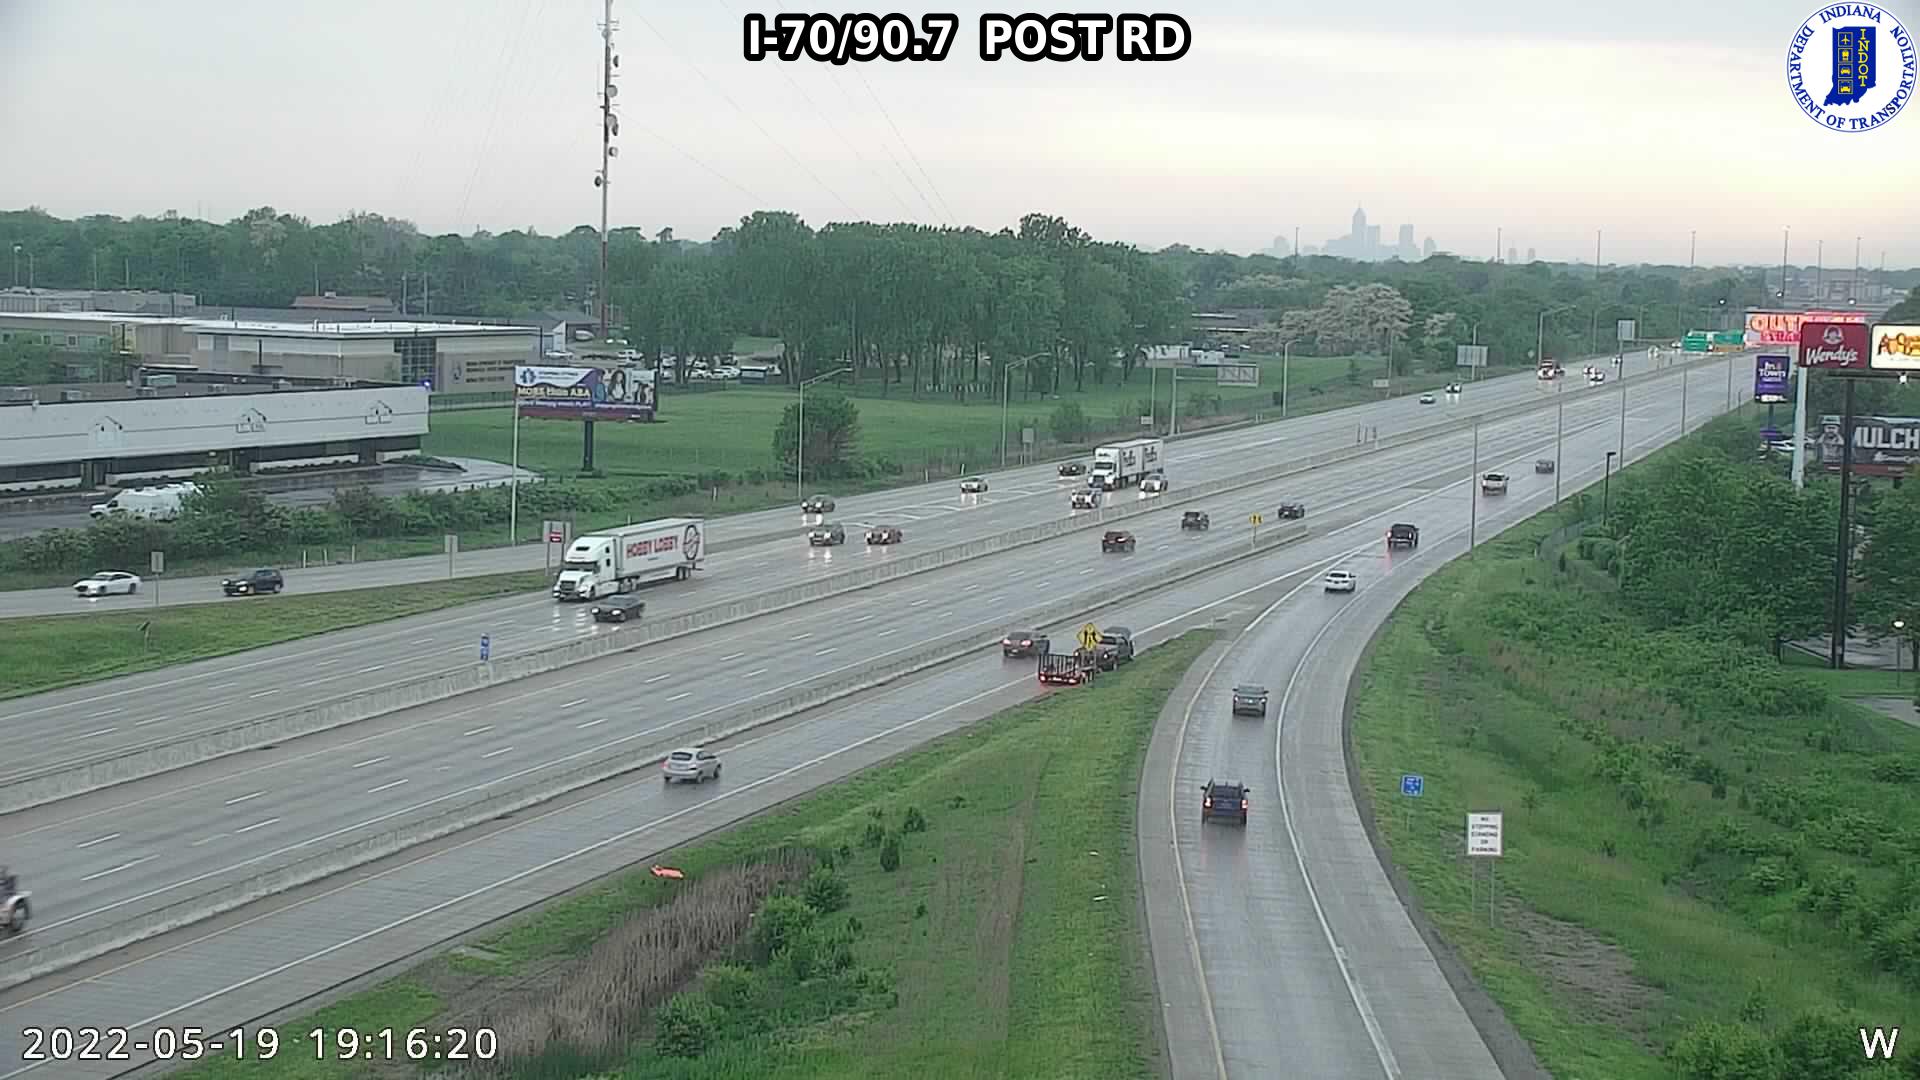 I-70/67.3  E OF SR 267 (62) () - Indiana